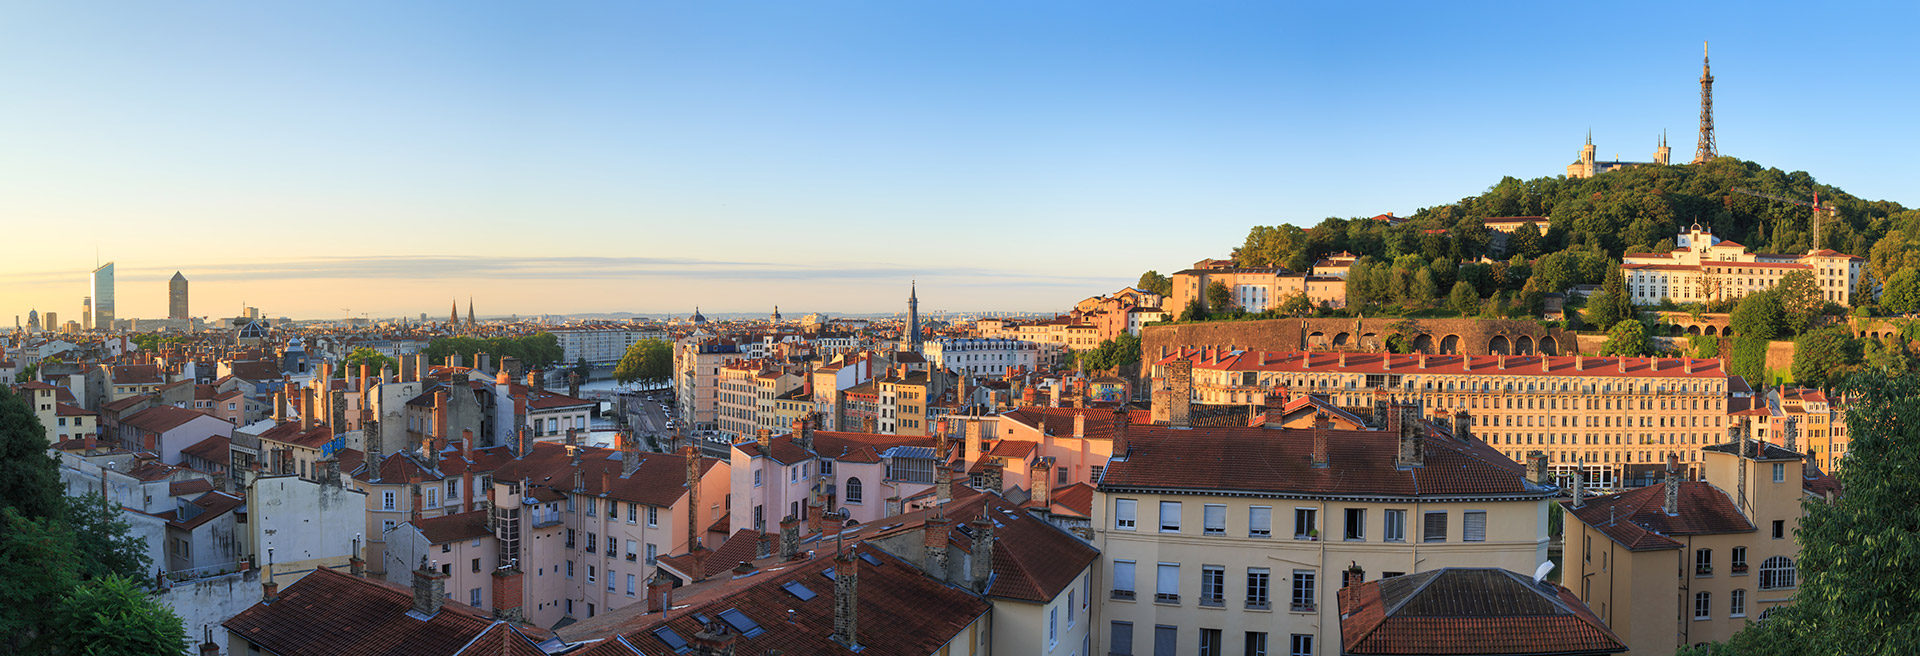 Vue sur Lyon de la Croix-Rousse © Sander van der Werf / Shutterstock